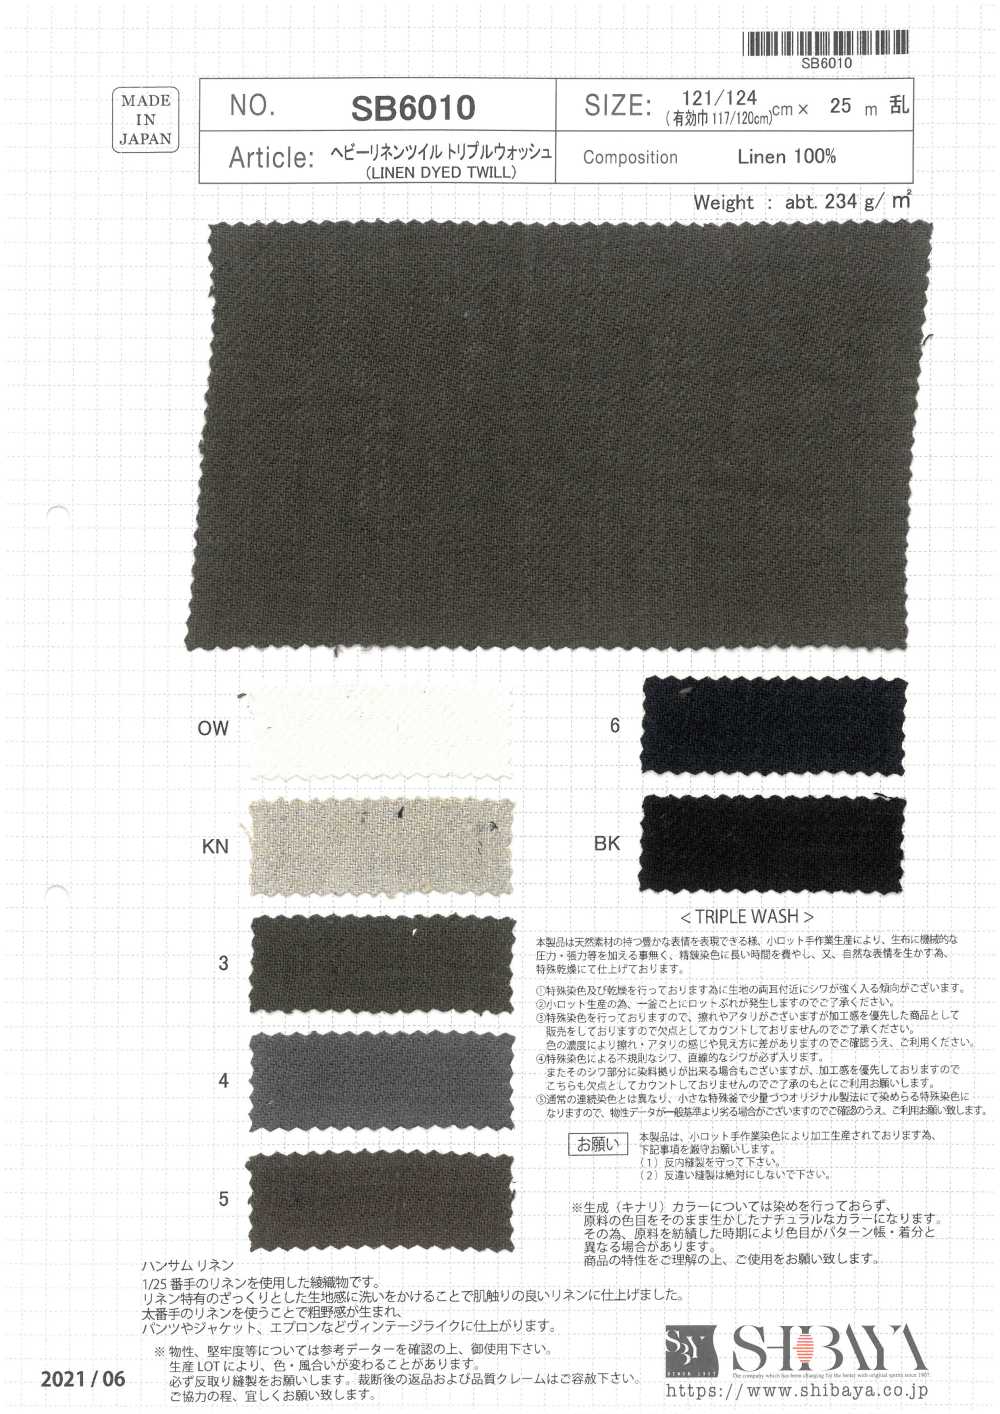 SB6010 Dreifache Wäsche Aus Schwerem Leinen[Textilgewebe] SHIBAYA